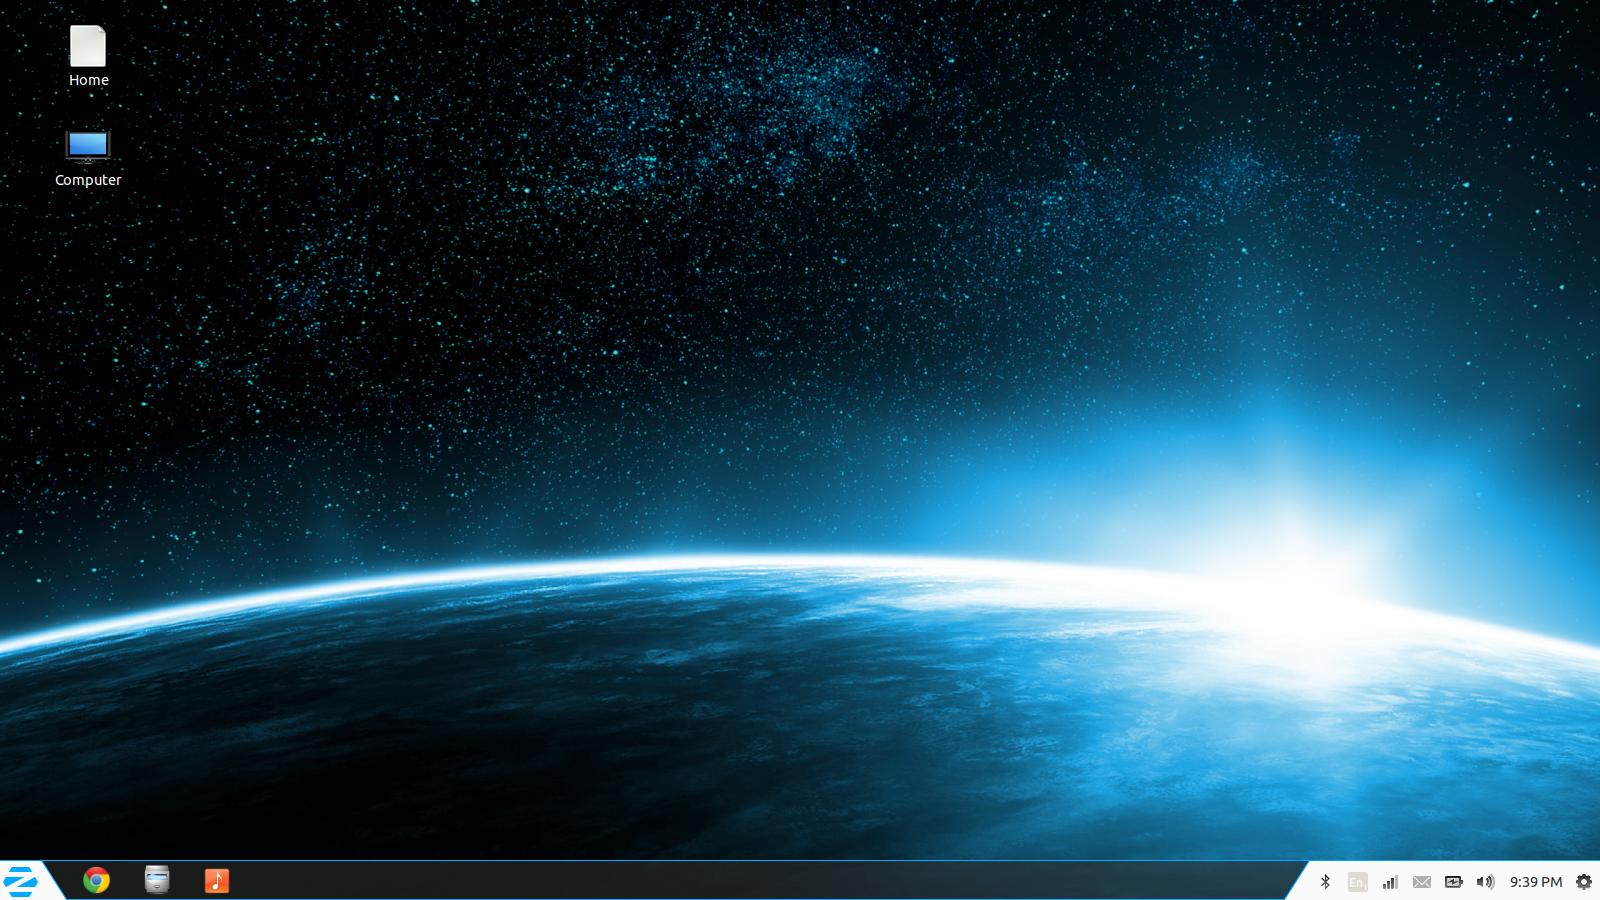 Windows Default Desktop Background Zorin Looks Like By